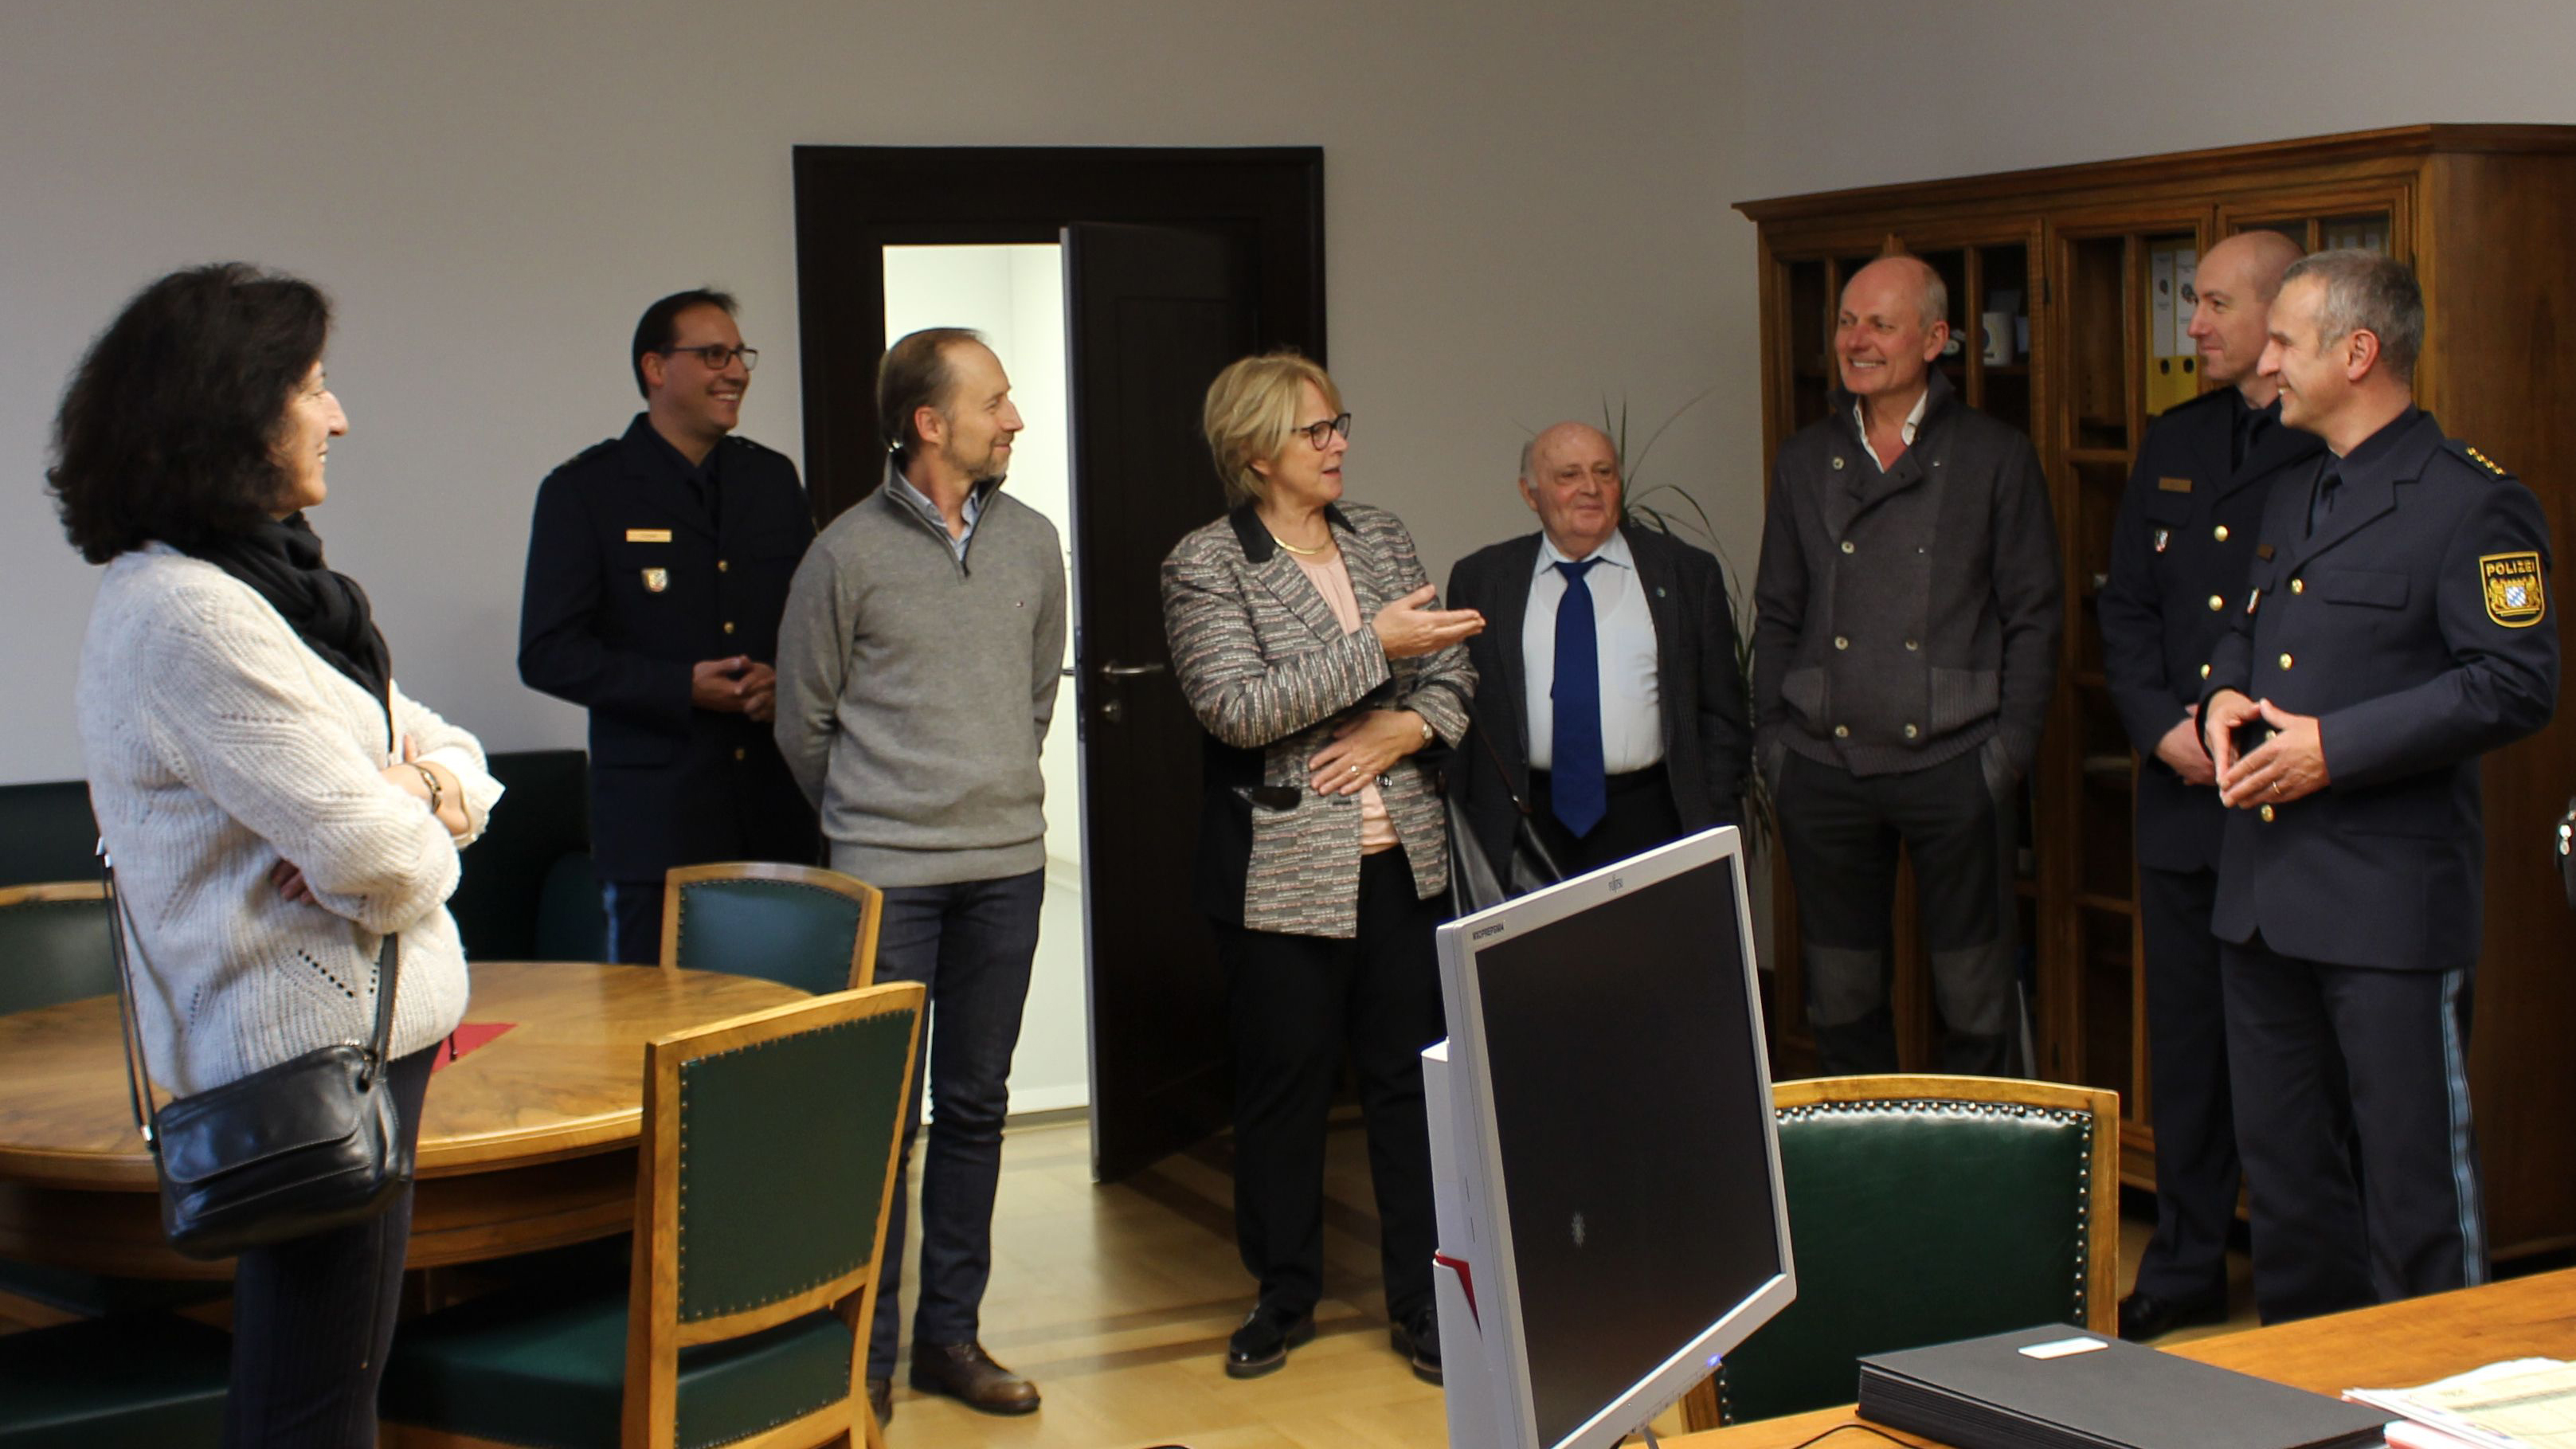 LPD Gerhard Roider empfing mit seinen Mitarbeitern Frau Ilse Danziger mit Vertretern der Jüdischen Gemeinde Regensburg